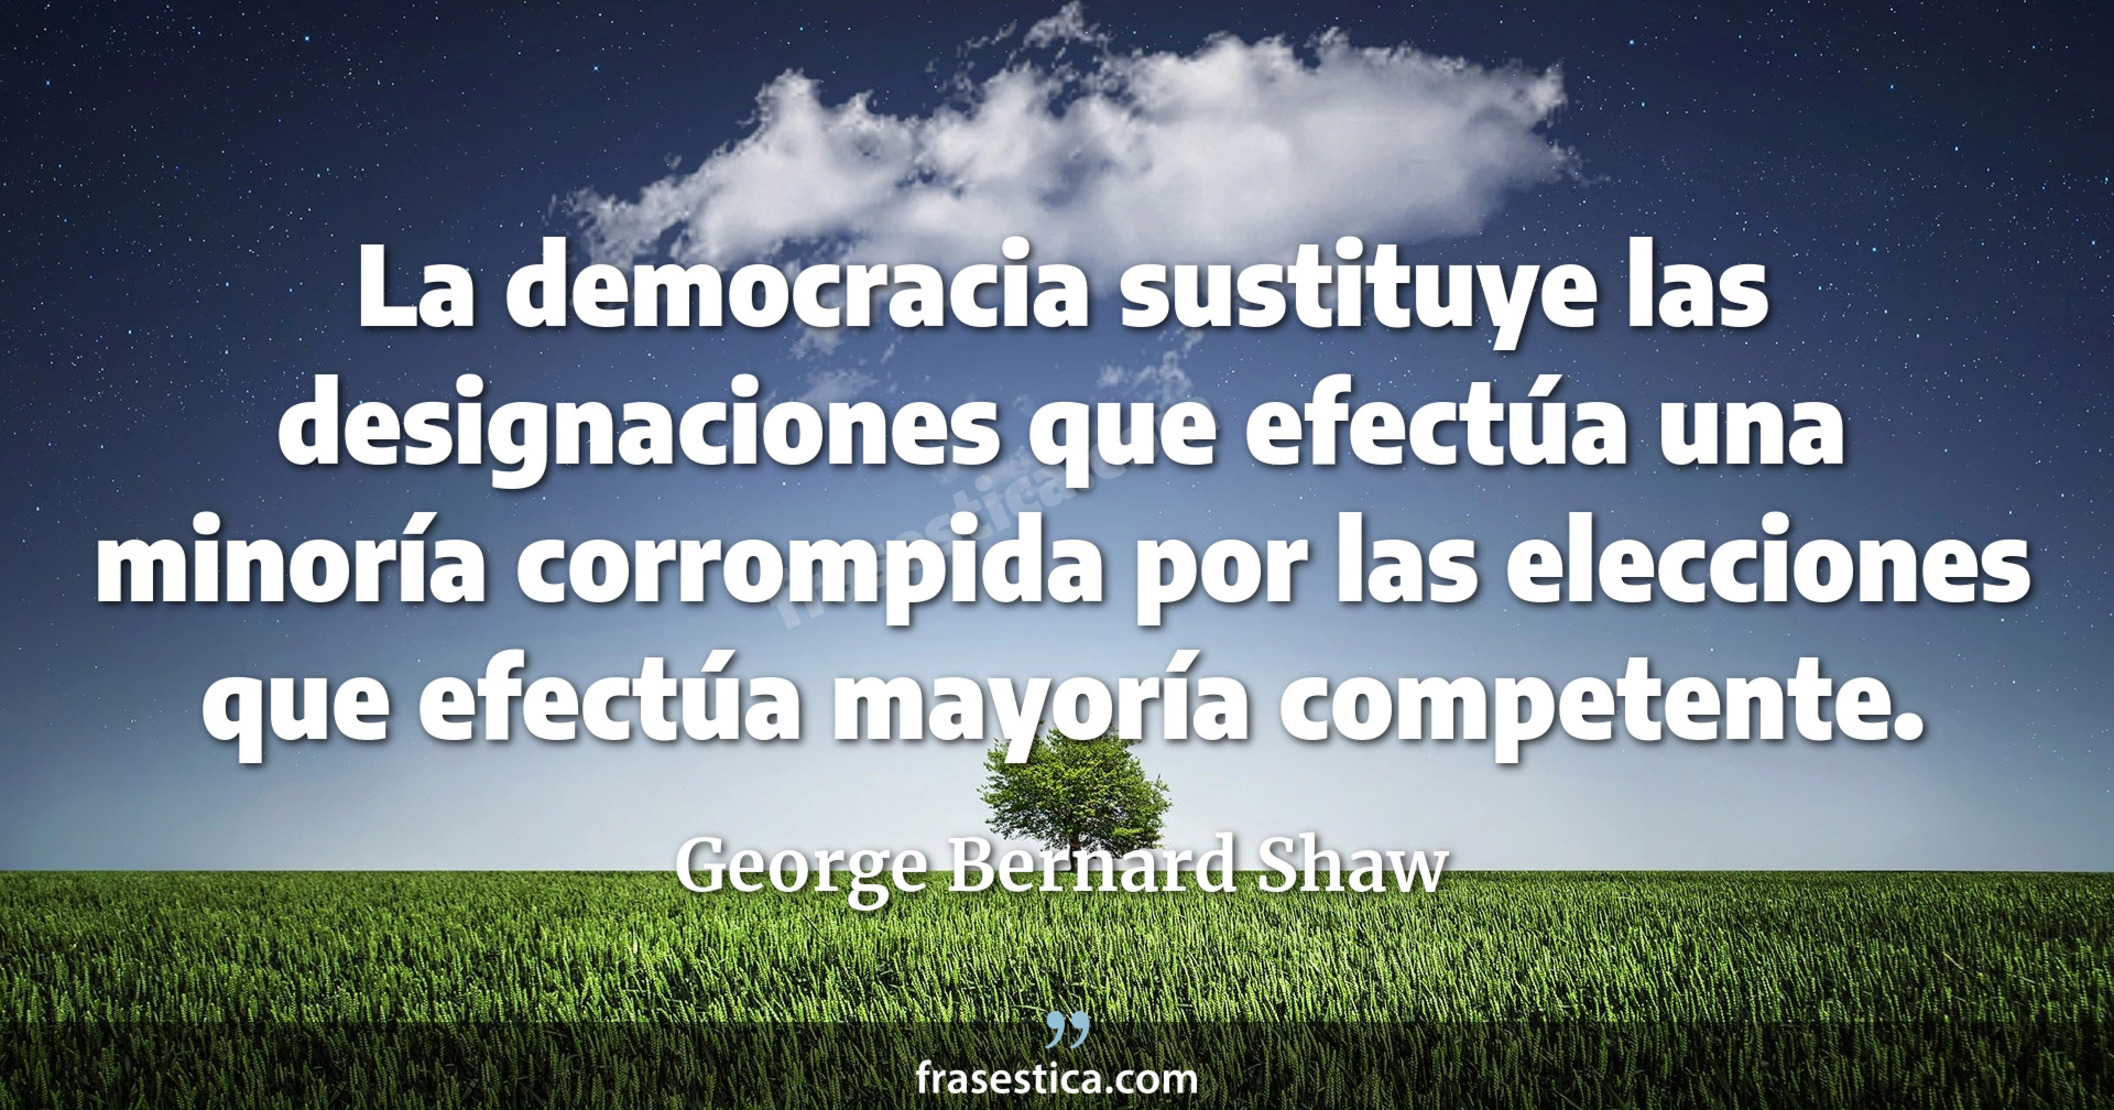 La democracia sustituye las designaciones que efectúa una minoría corrompida por las elecciones que efectúa mayoría competente. - George Bernard Shaw